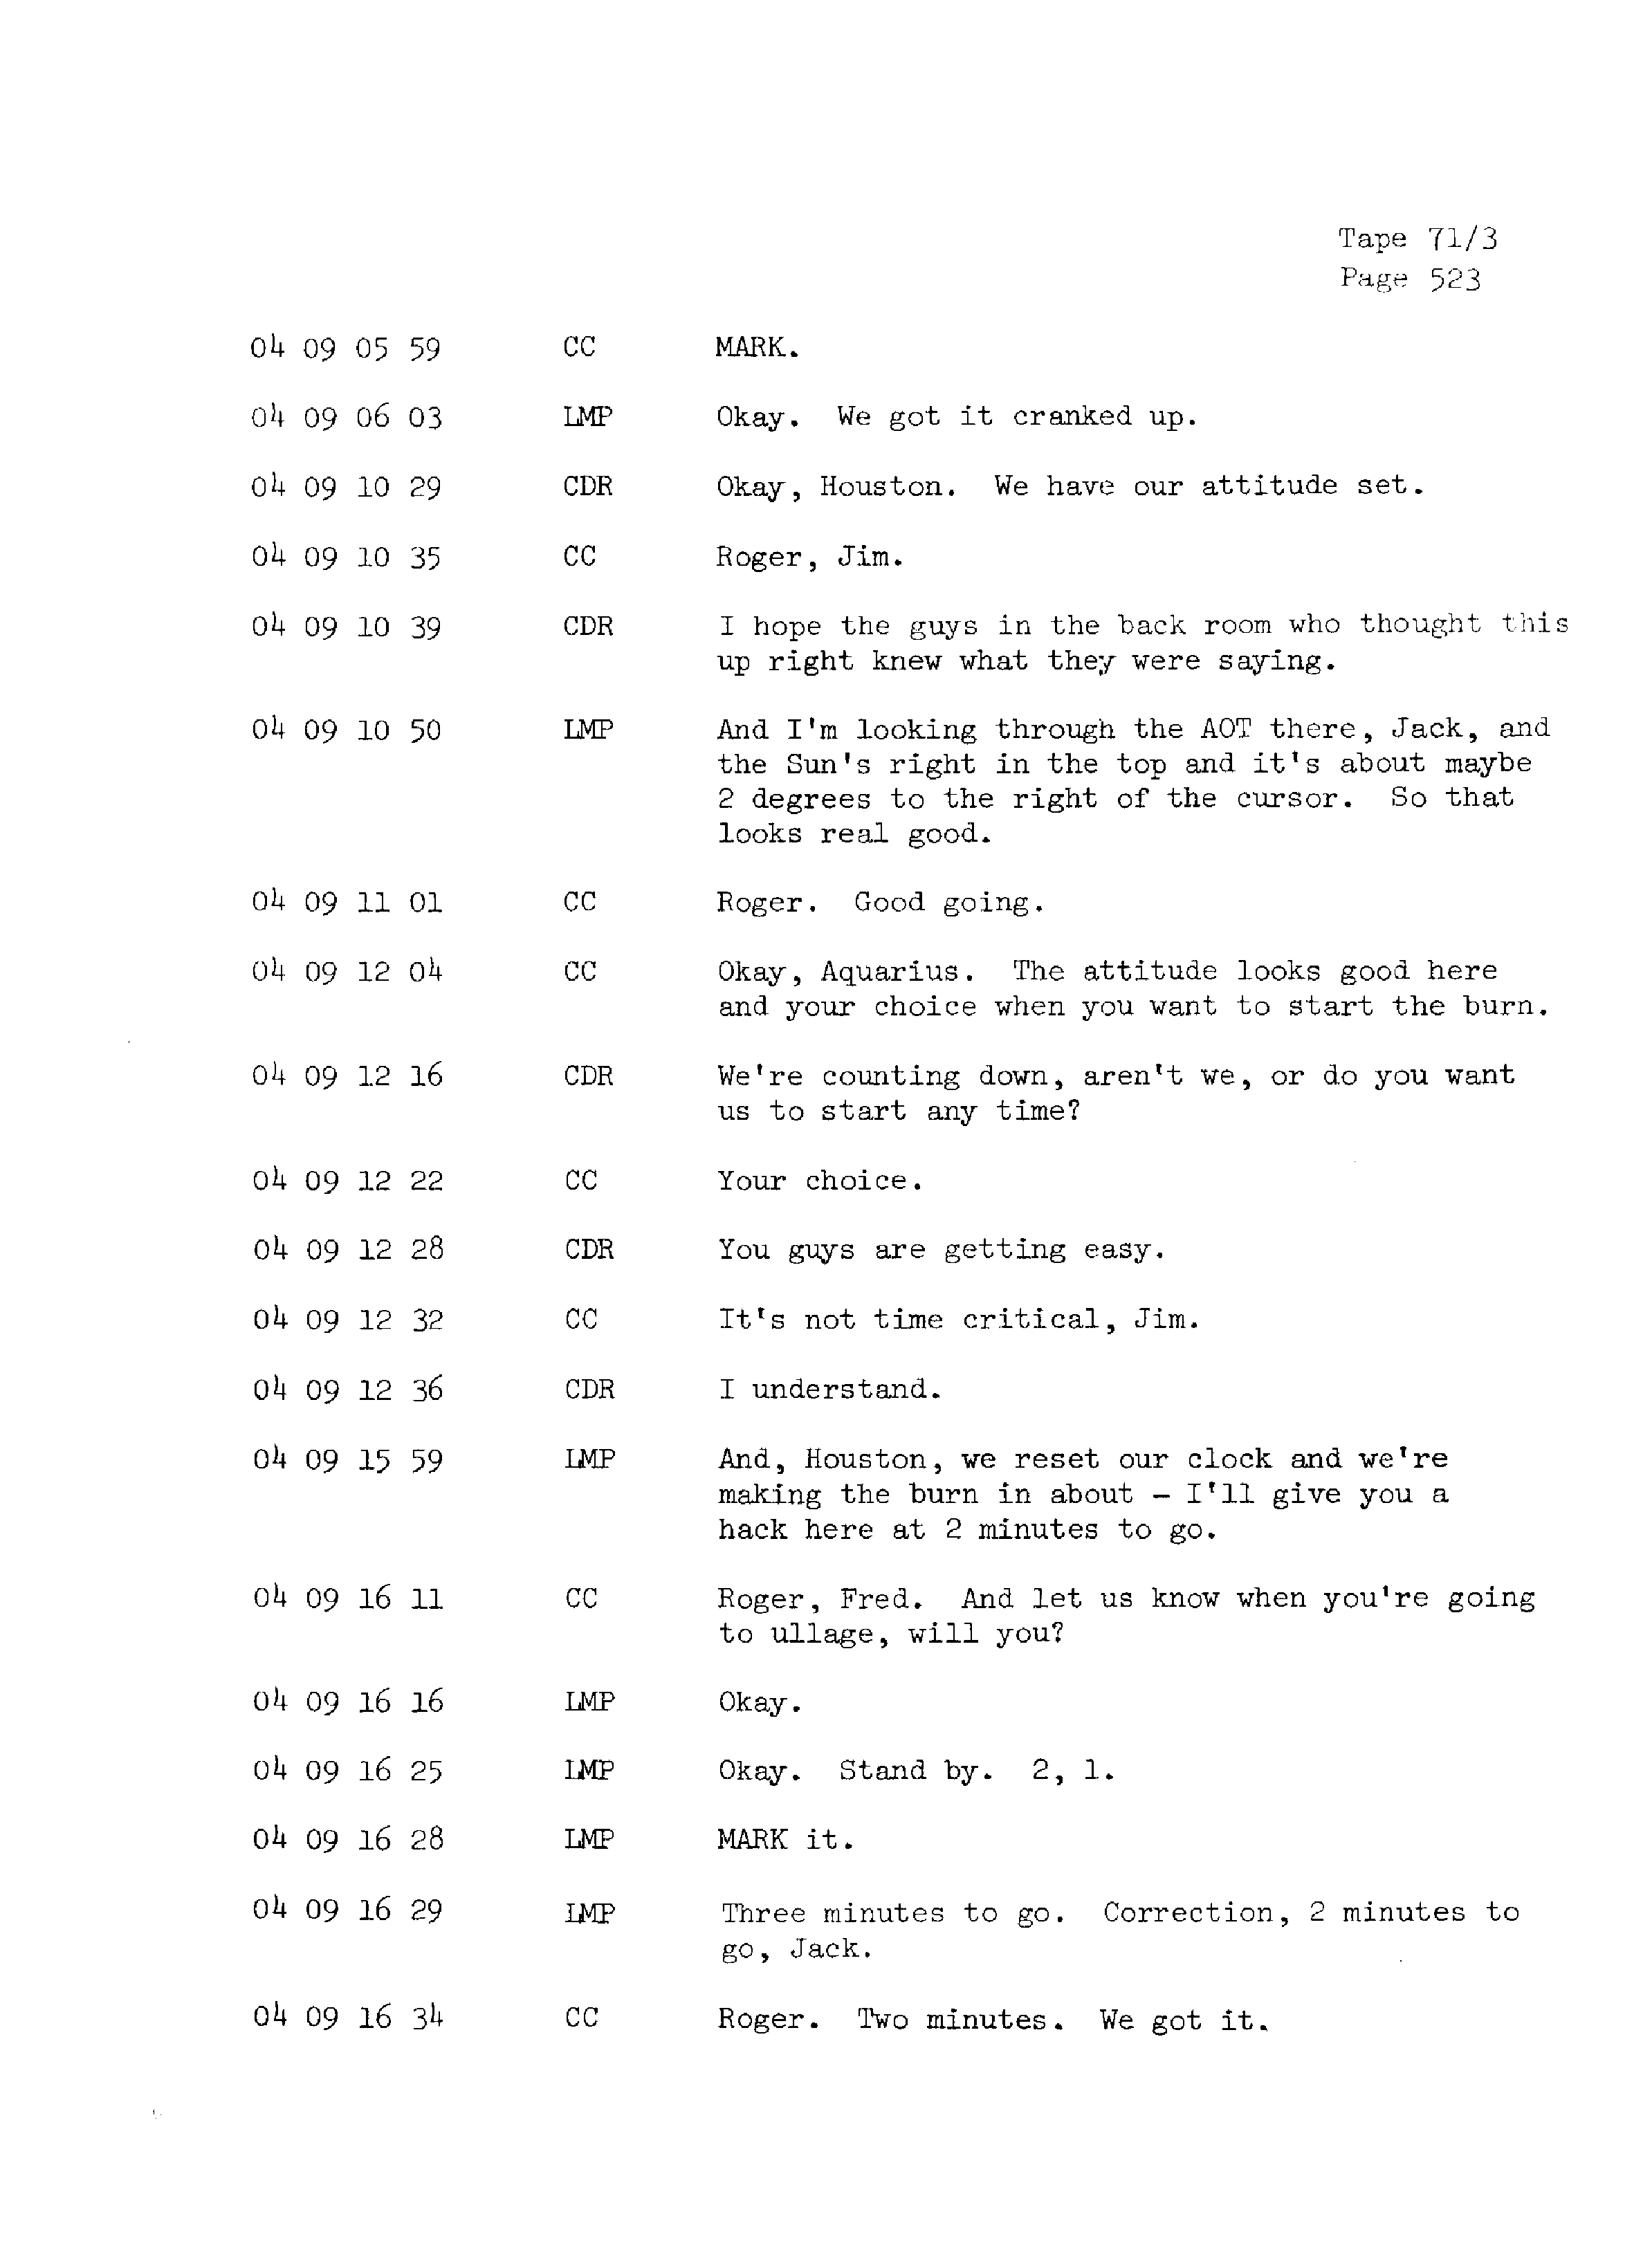 Page 530 of Apollo 13’s original transcript